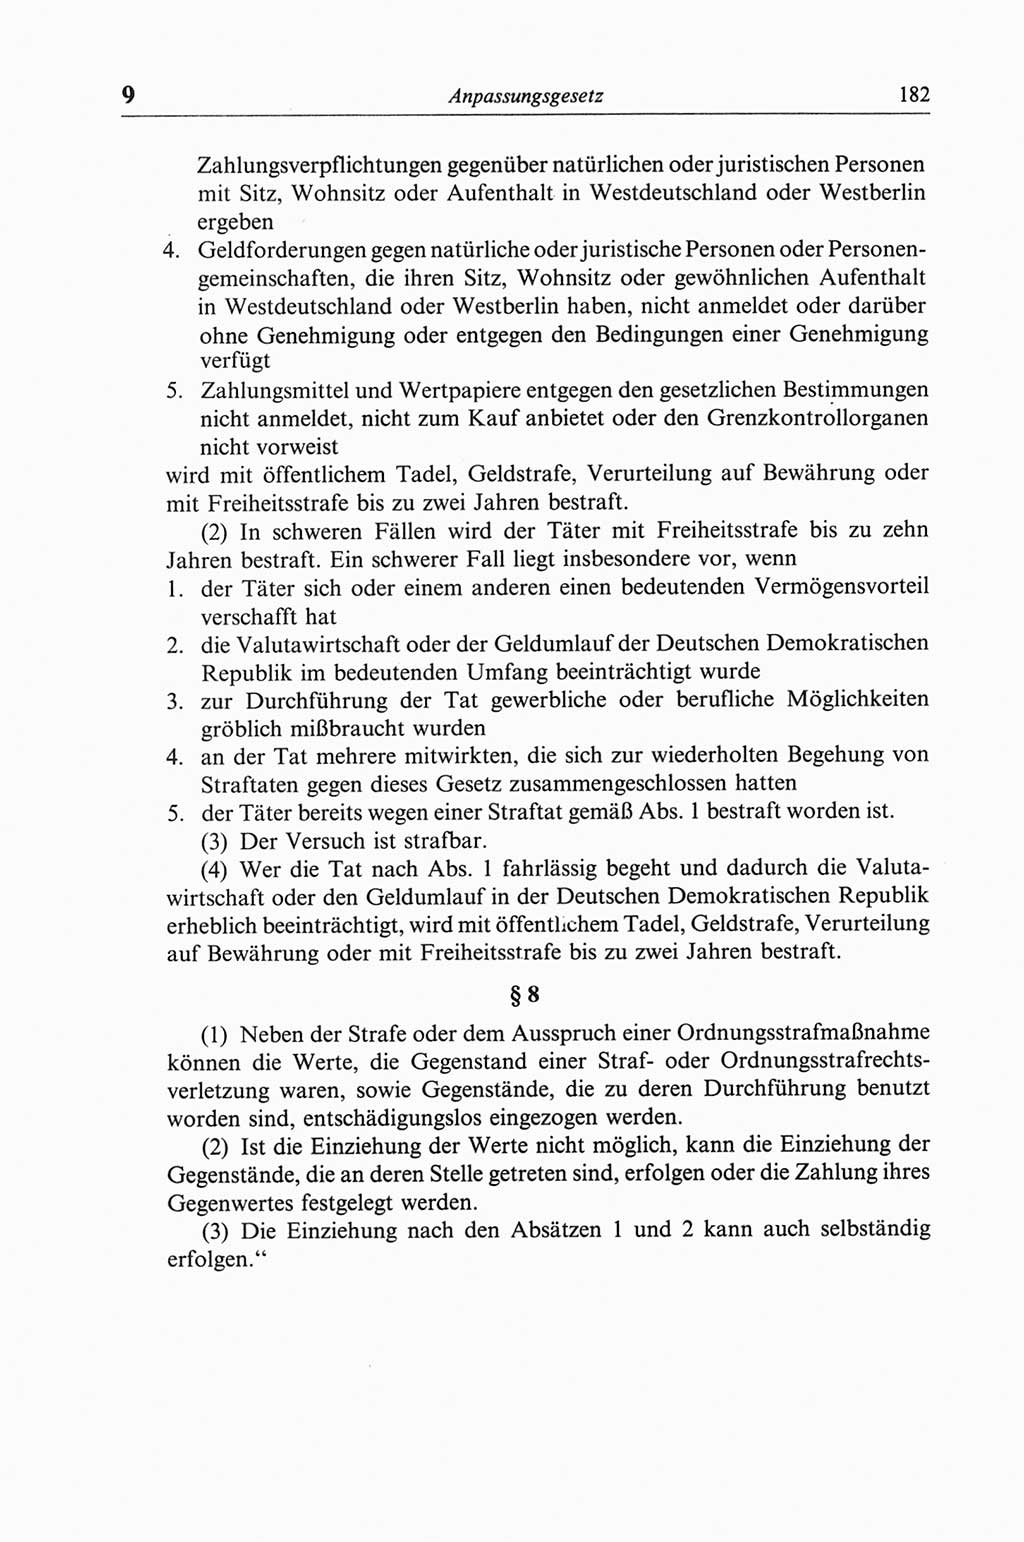 Strafgesetzbuch (StGB) der Deutschen Demokratischen Republik (DDR) und angrenzende Gesetze und Bestimmungen 1968, Seite 182 (StGB Ges. Best. DDR 1968, S. 182)